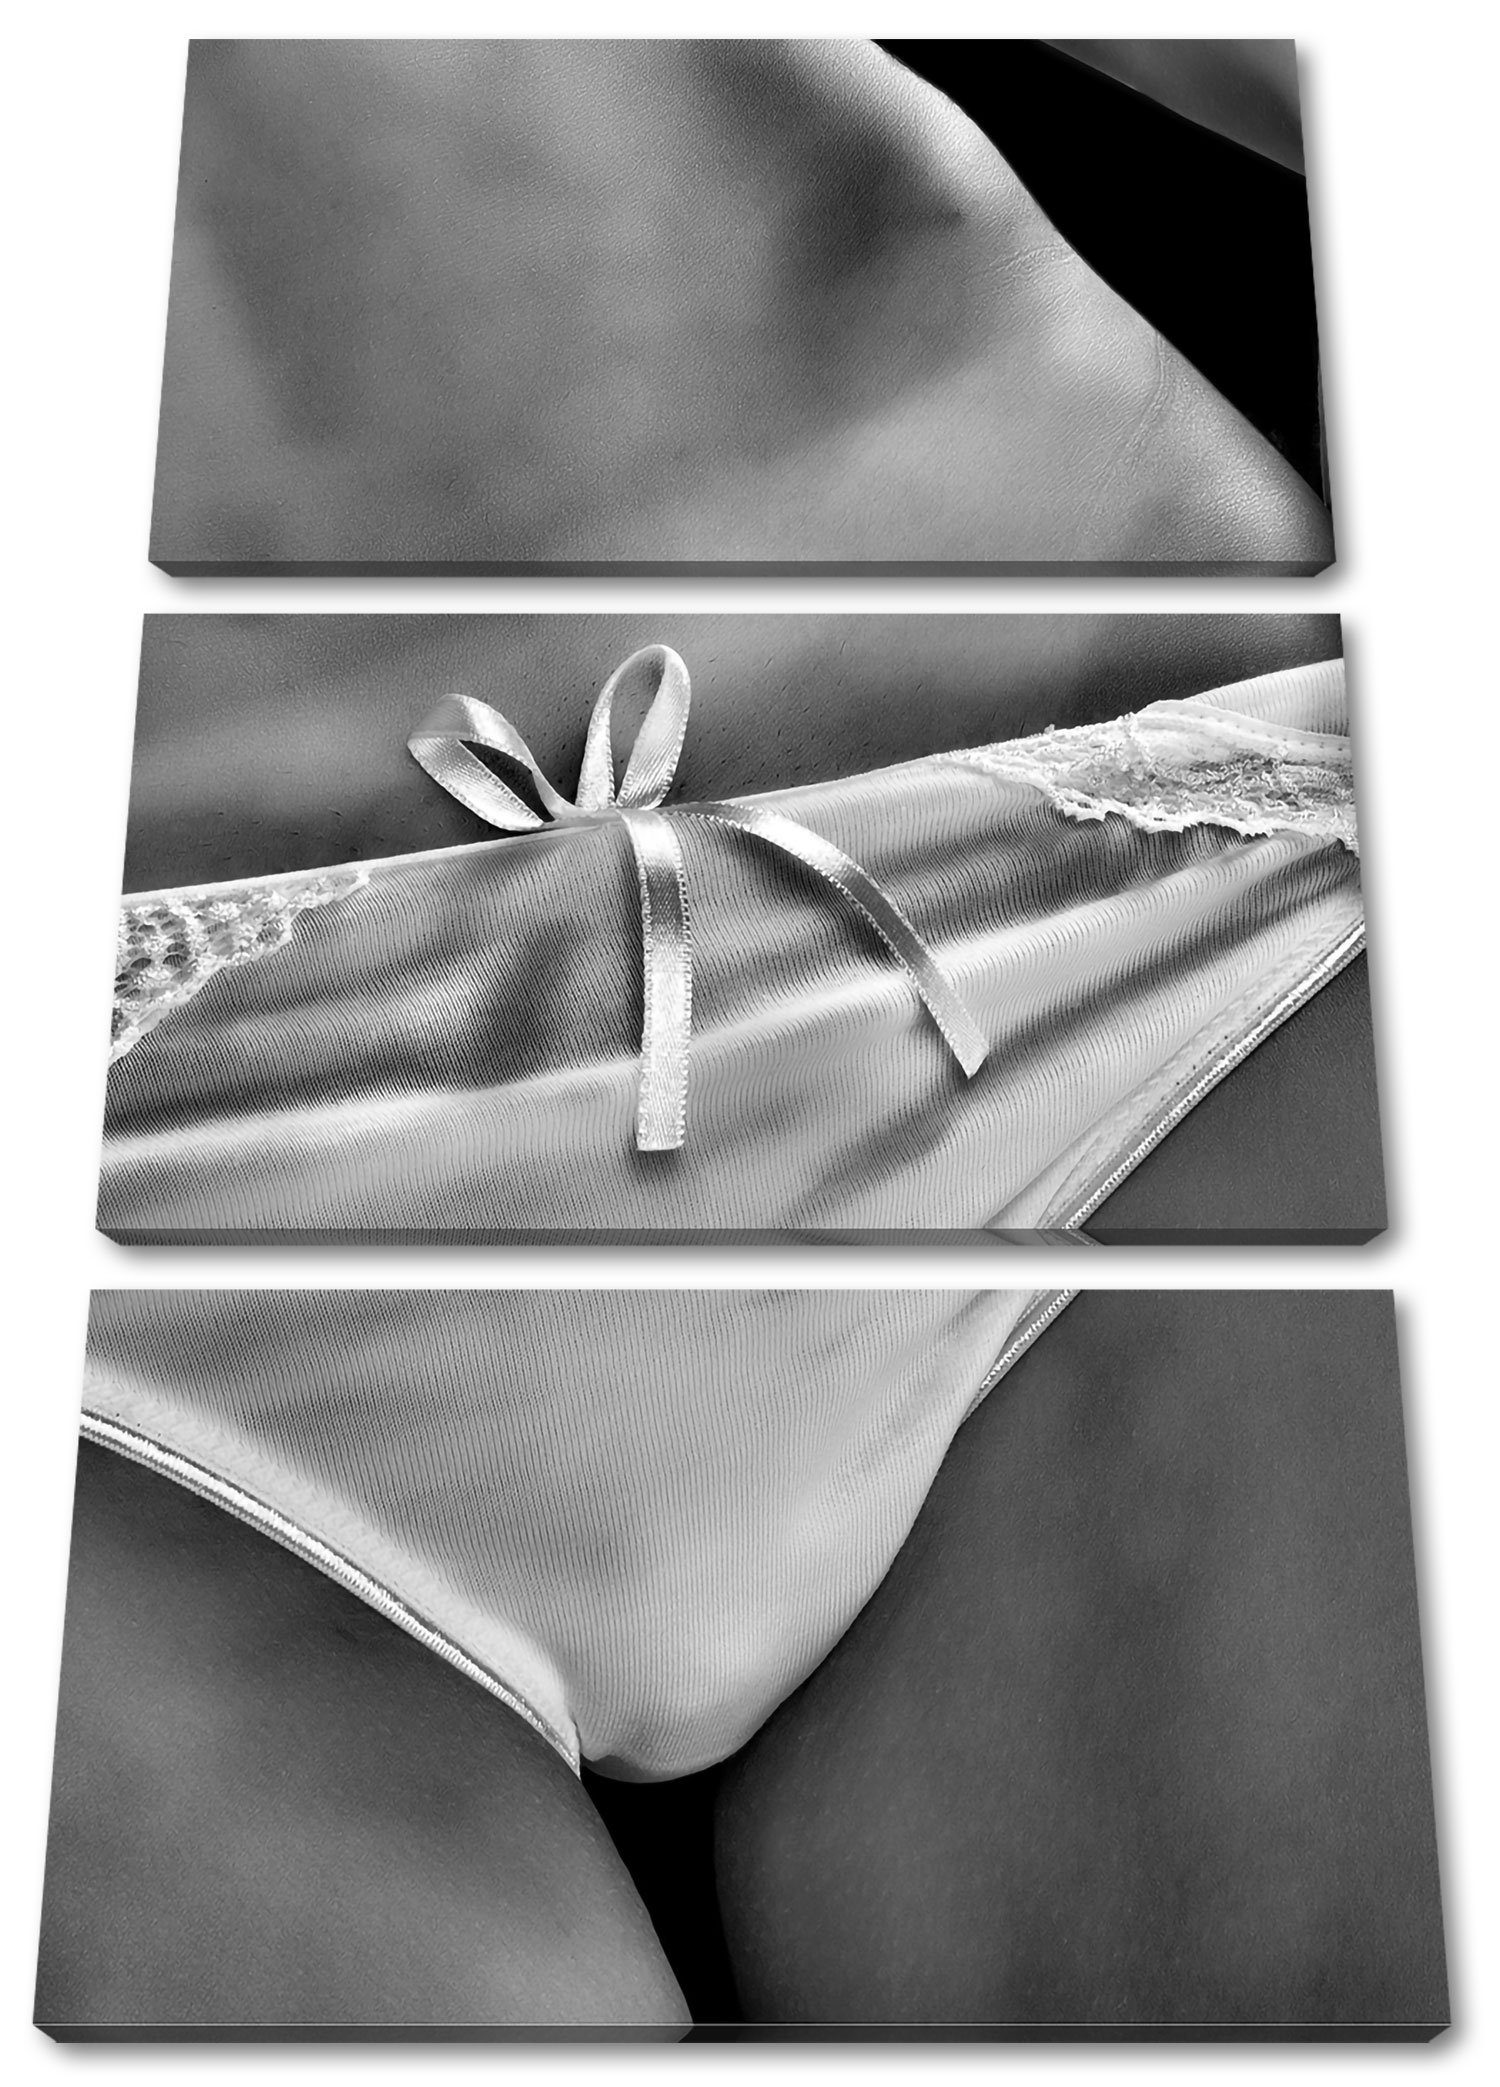 Pixxprint Leinwandbild Sexy weiße Dessous, (120x80cm) weiße Dessous (1 3Teiler Sexy Zackenaufhänger inkl. St), fertig Leinwandbild bespannt